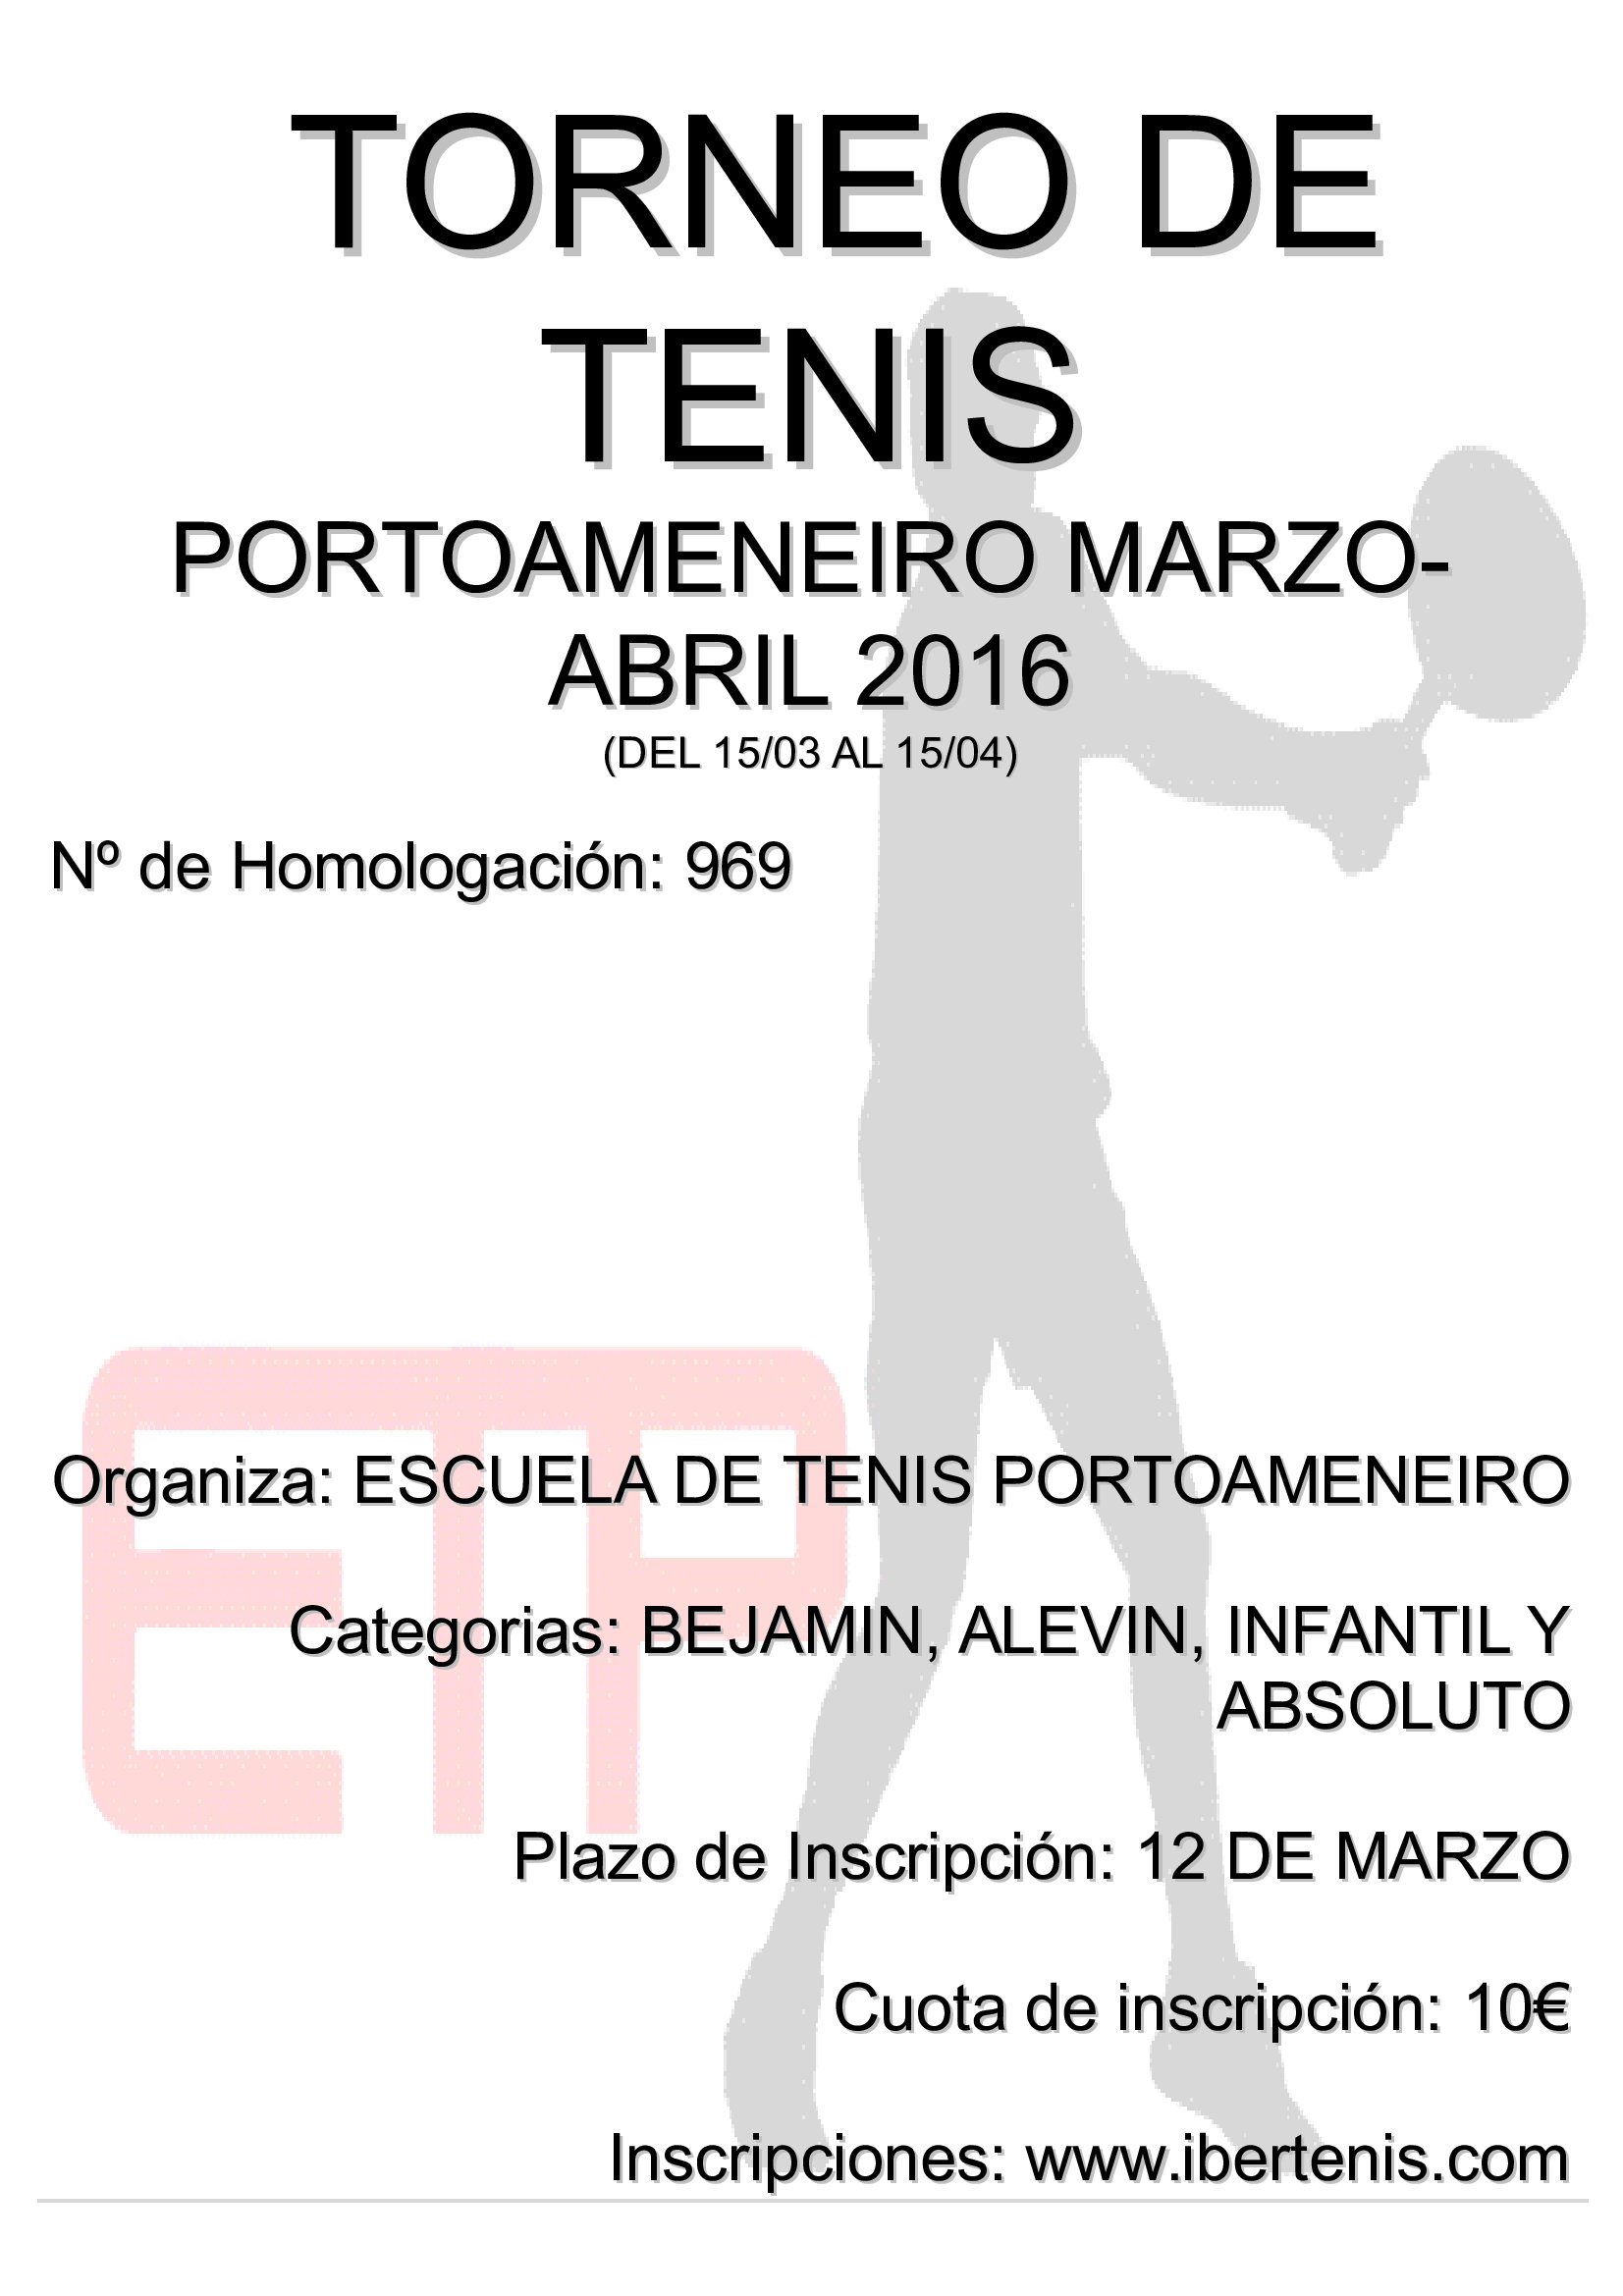 Cartel del Torneo Portoameneiro Marzo-Abril